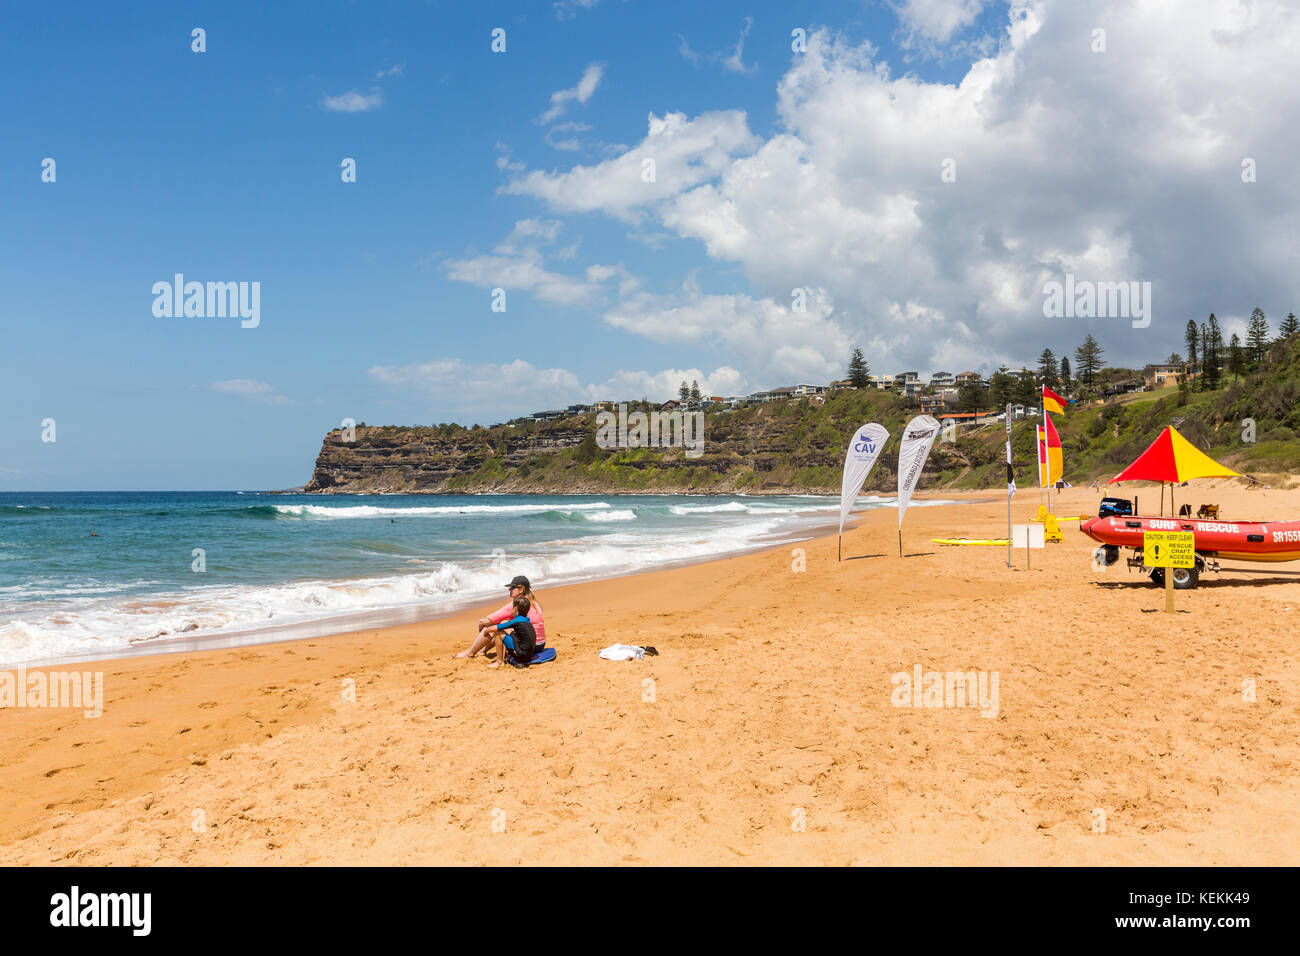 Surf salvavidas rescate en playa, playa Bungan Bungan es una popular playa de surf en las playas del norte de Sydney, Nueva Gales del Sur, Australia Foto de stock